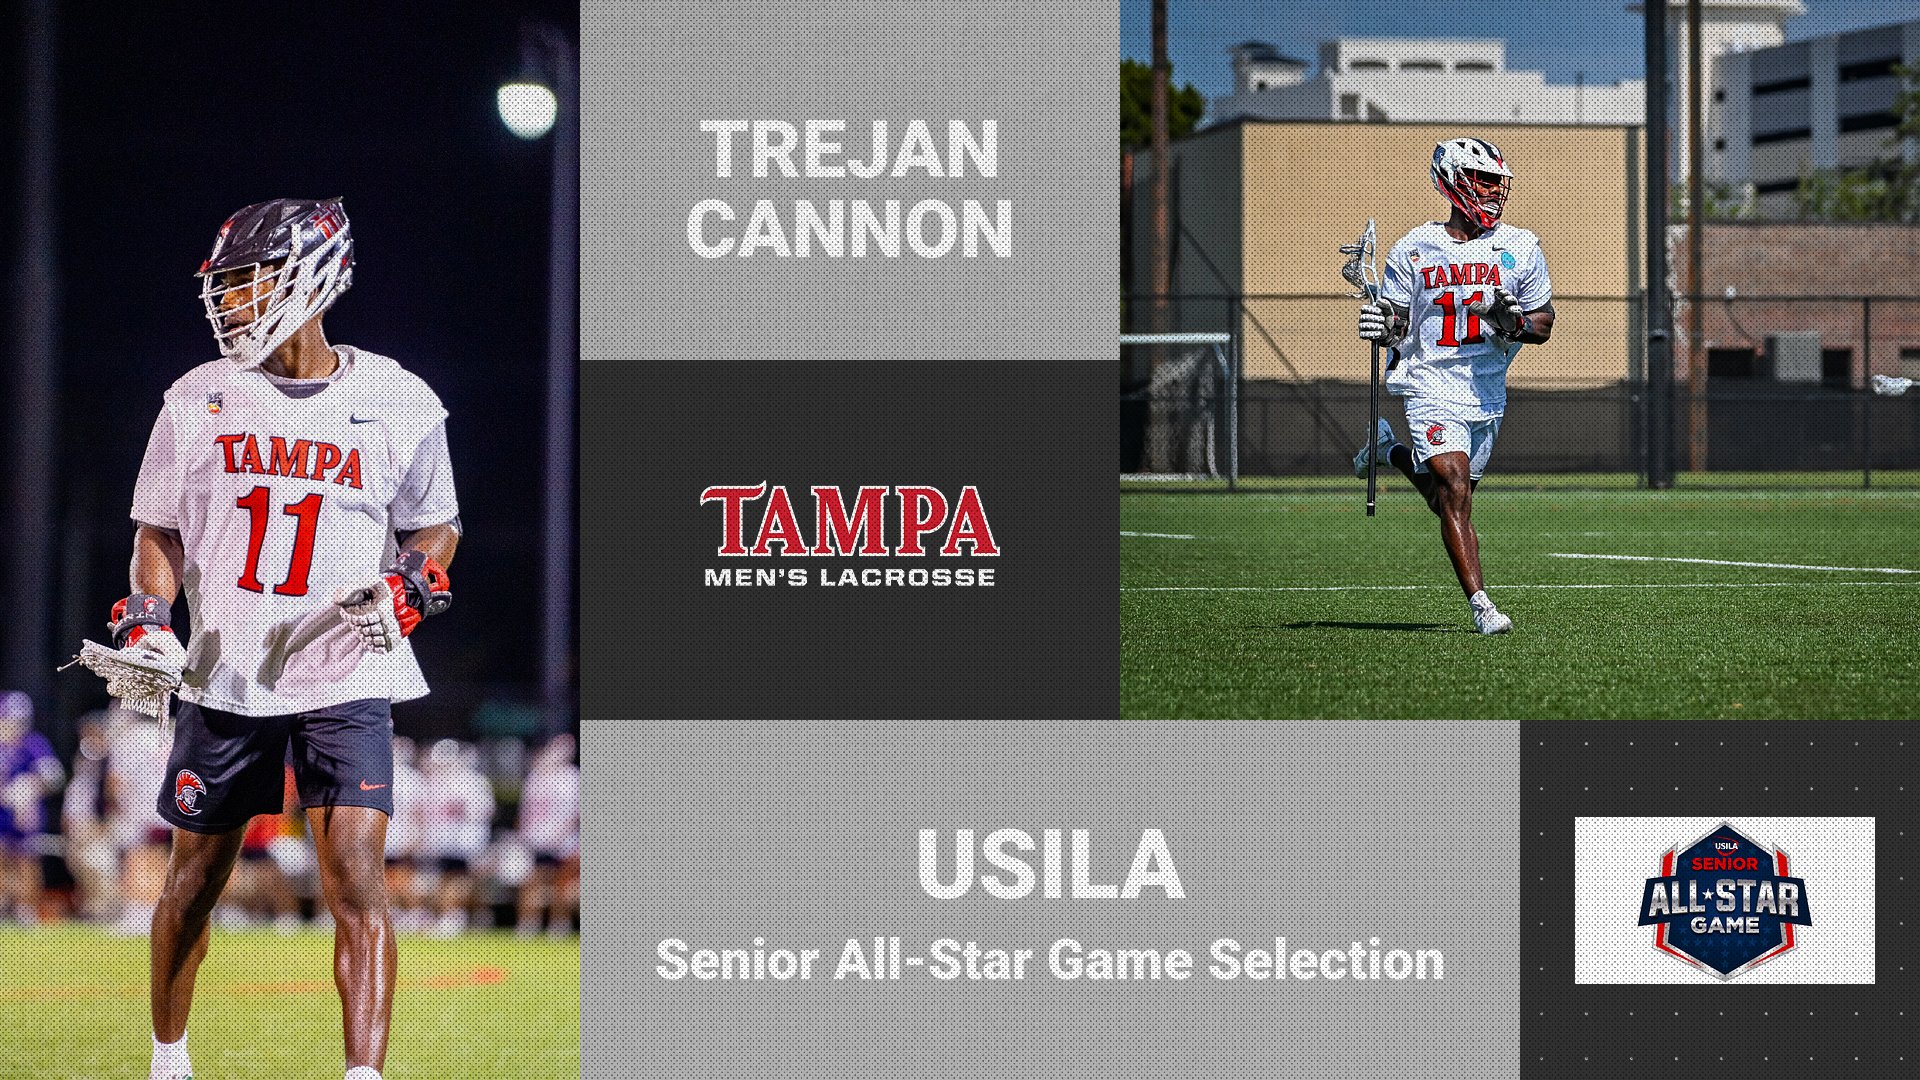 Trejan Cannon to Represent Tampa in USILA Senior All-Star Game